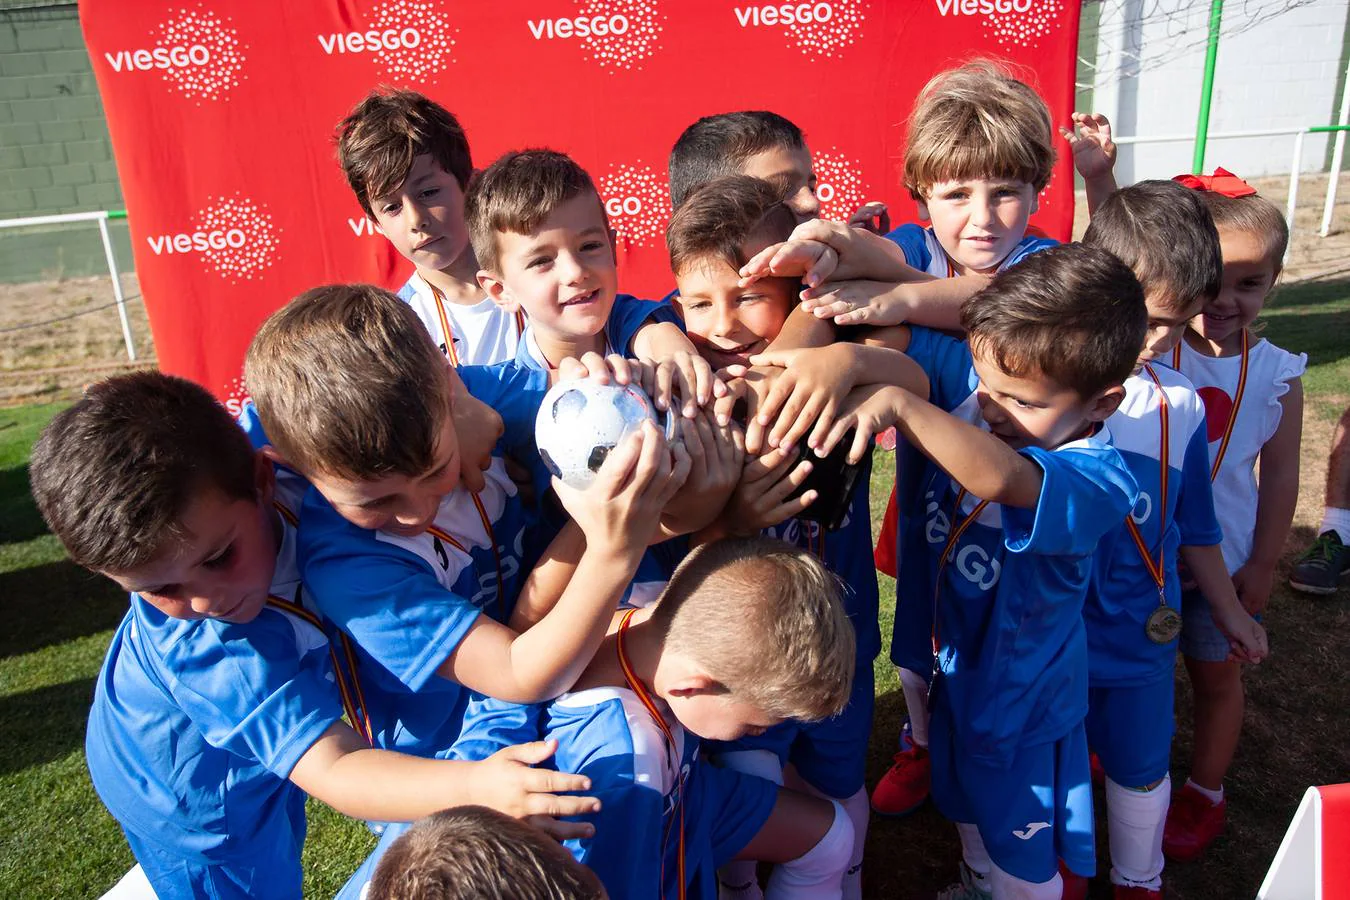 Copa viesgo: semifinales y final categoría bebé